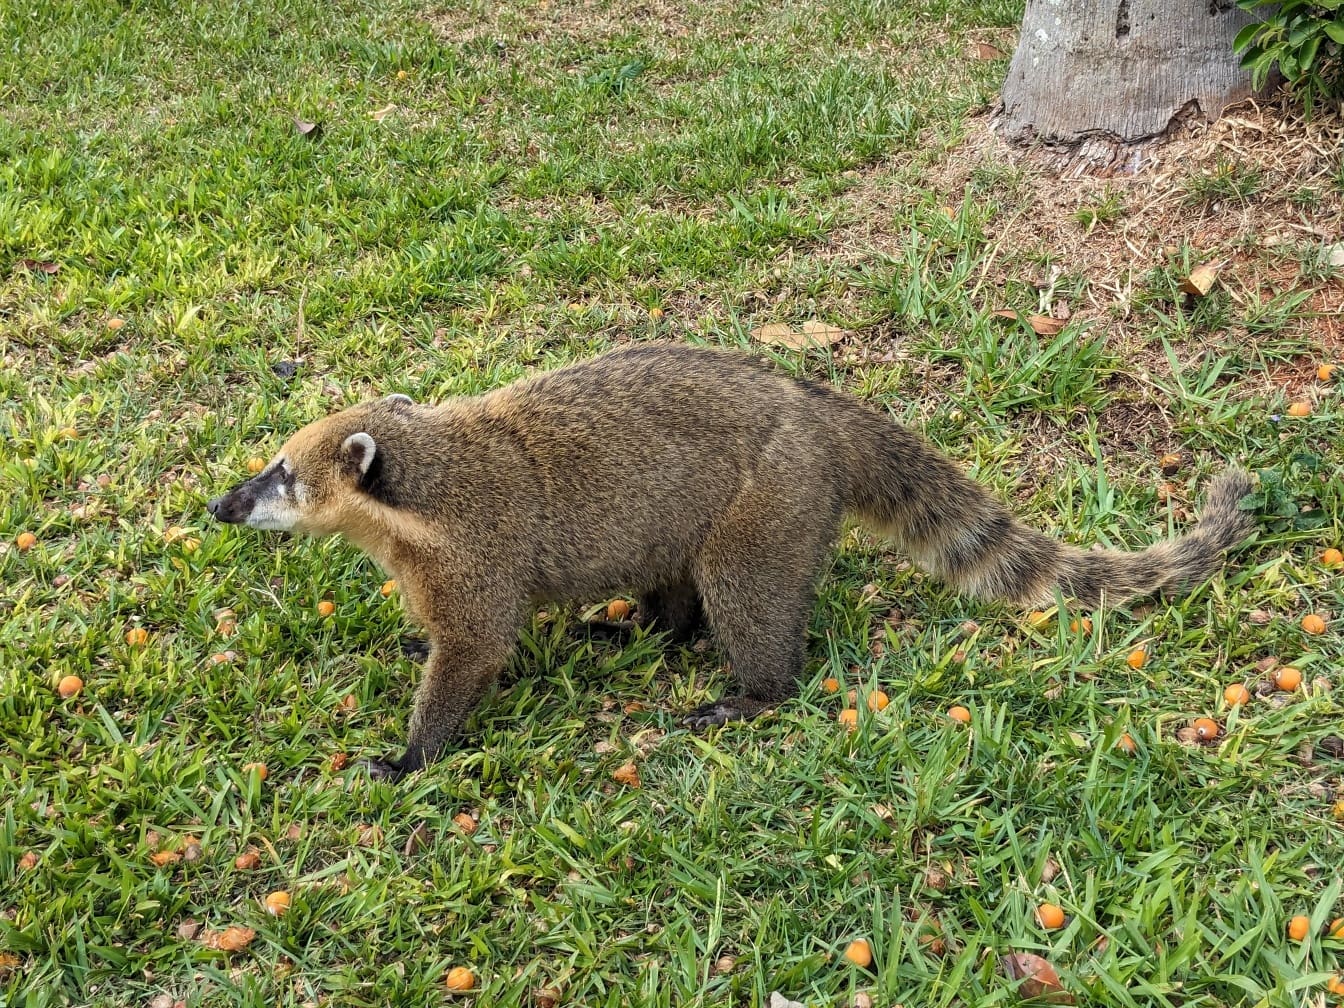 Etelä-Amerikan coati (Nasua nasua) endeeminen eläinlaji, joka muistuttaa pesukarhua (Procyonidae)